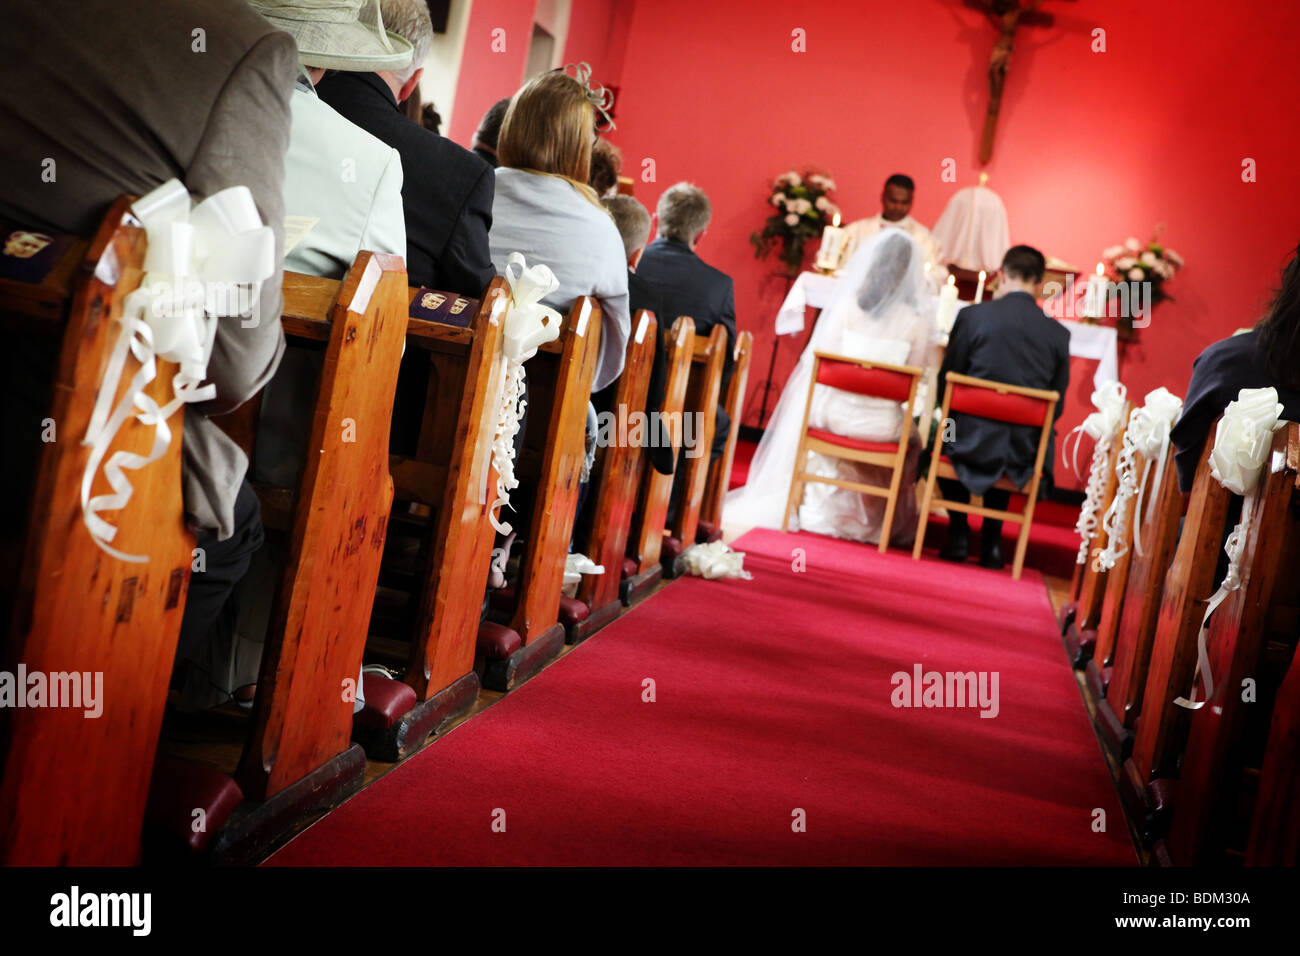 Kirche-Insel mit rotem Teppich und Braut und Bräutigam sitzen in der Hochzeitszeremonie am Altar Reportage Stil Hochzeit Foto Bild UK Stockfoto